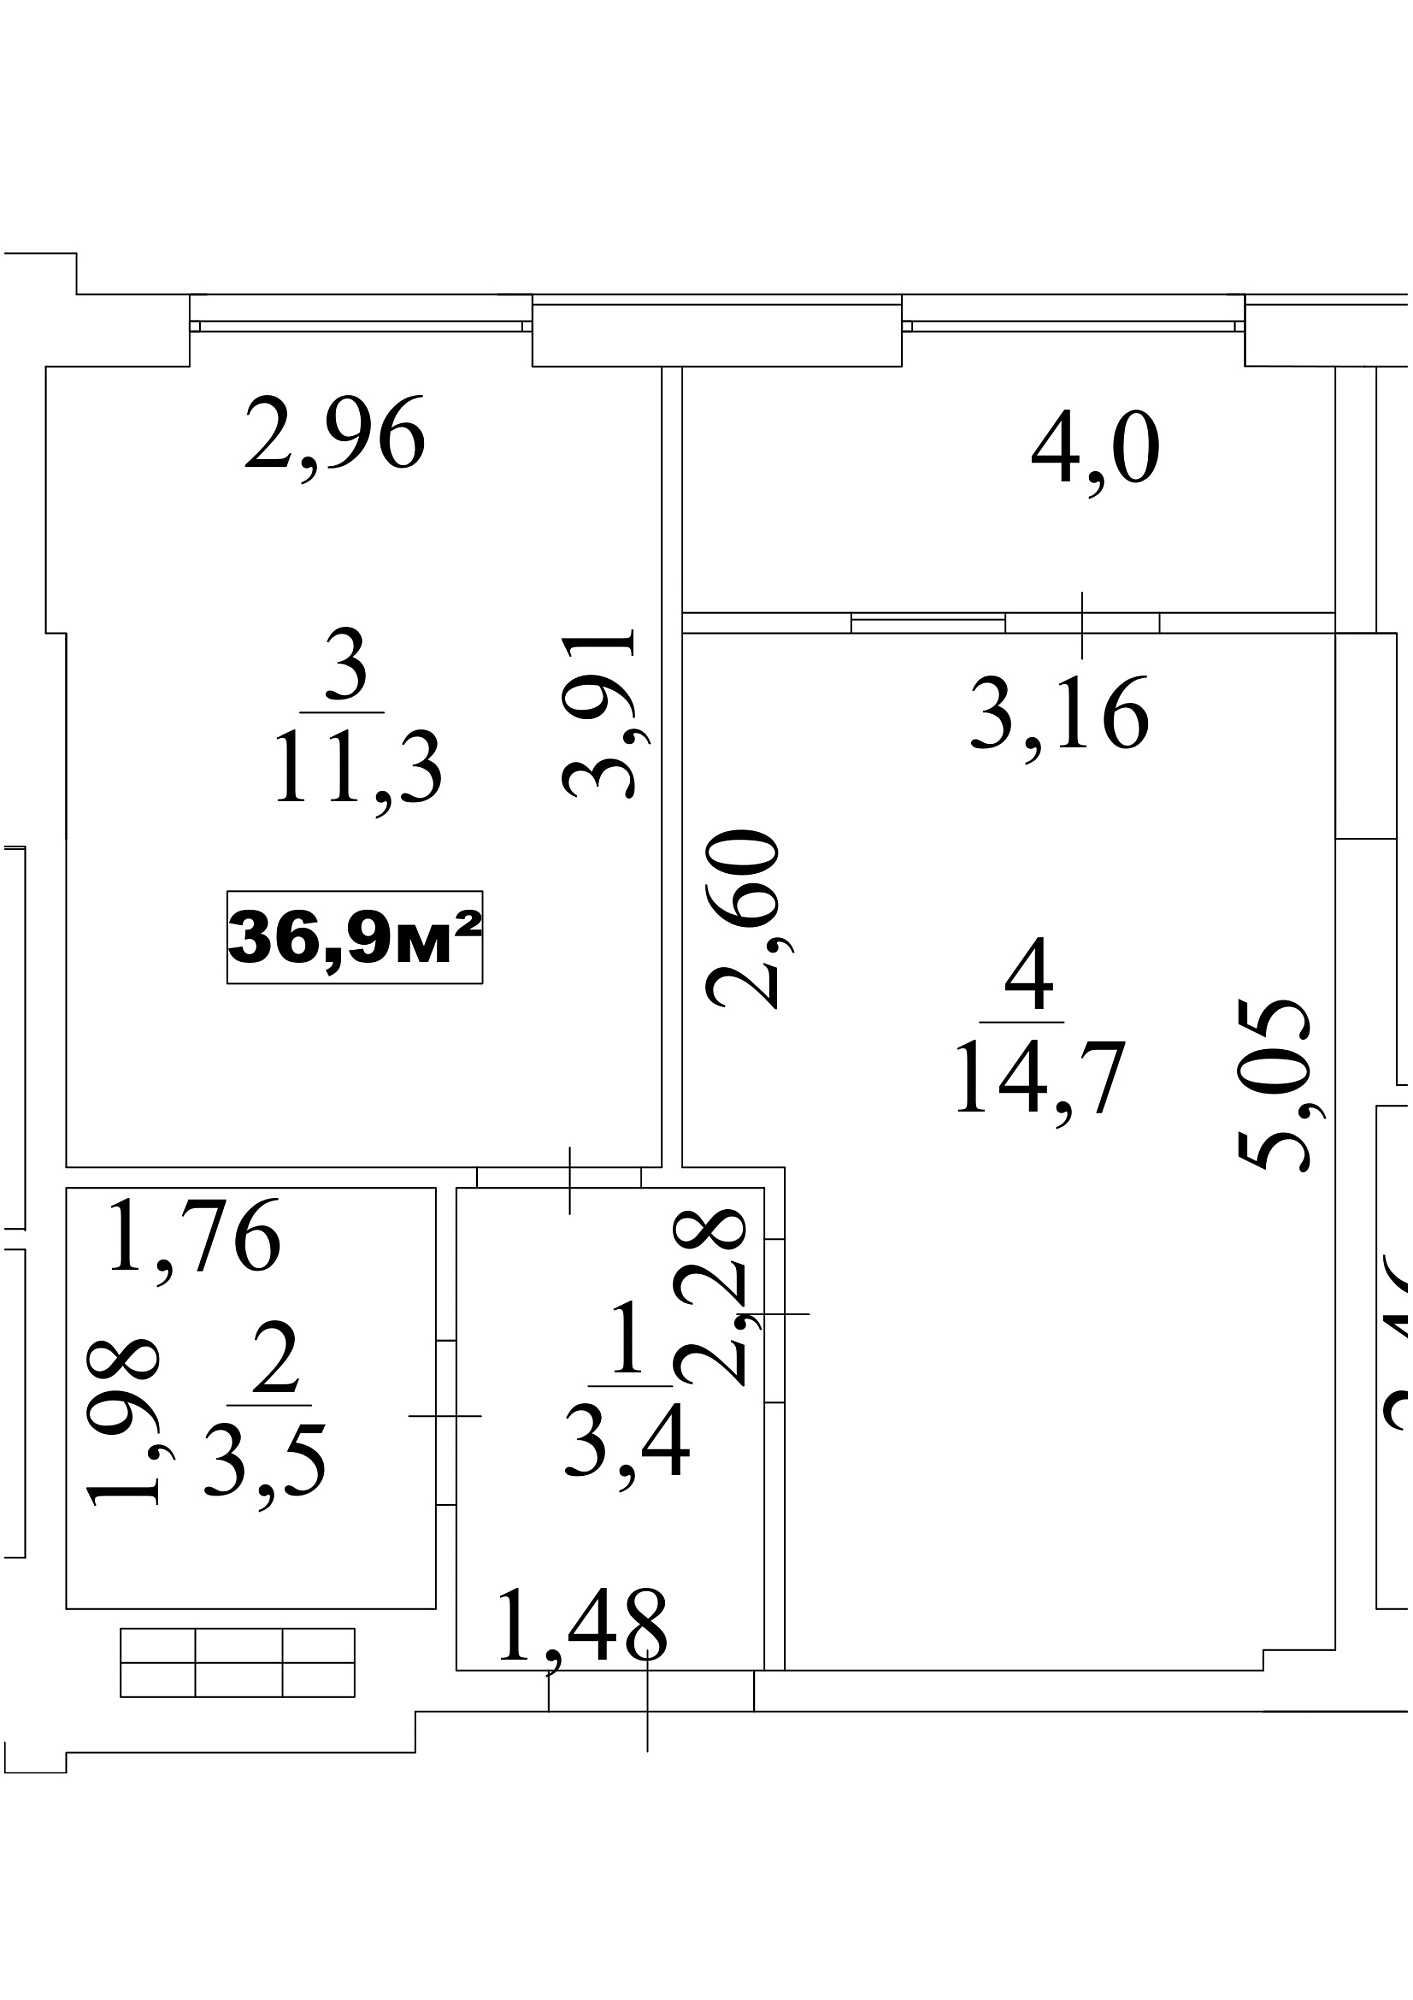 Планировка 1-к квартира площей 36.9м2, AB-10-07/00060.